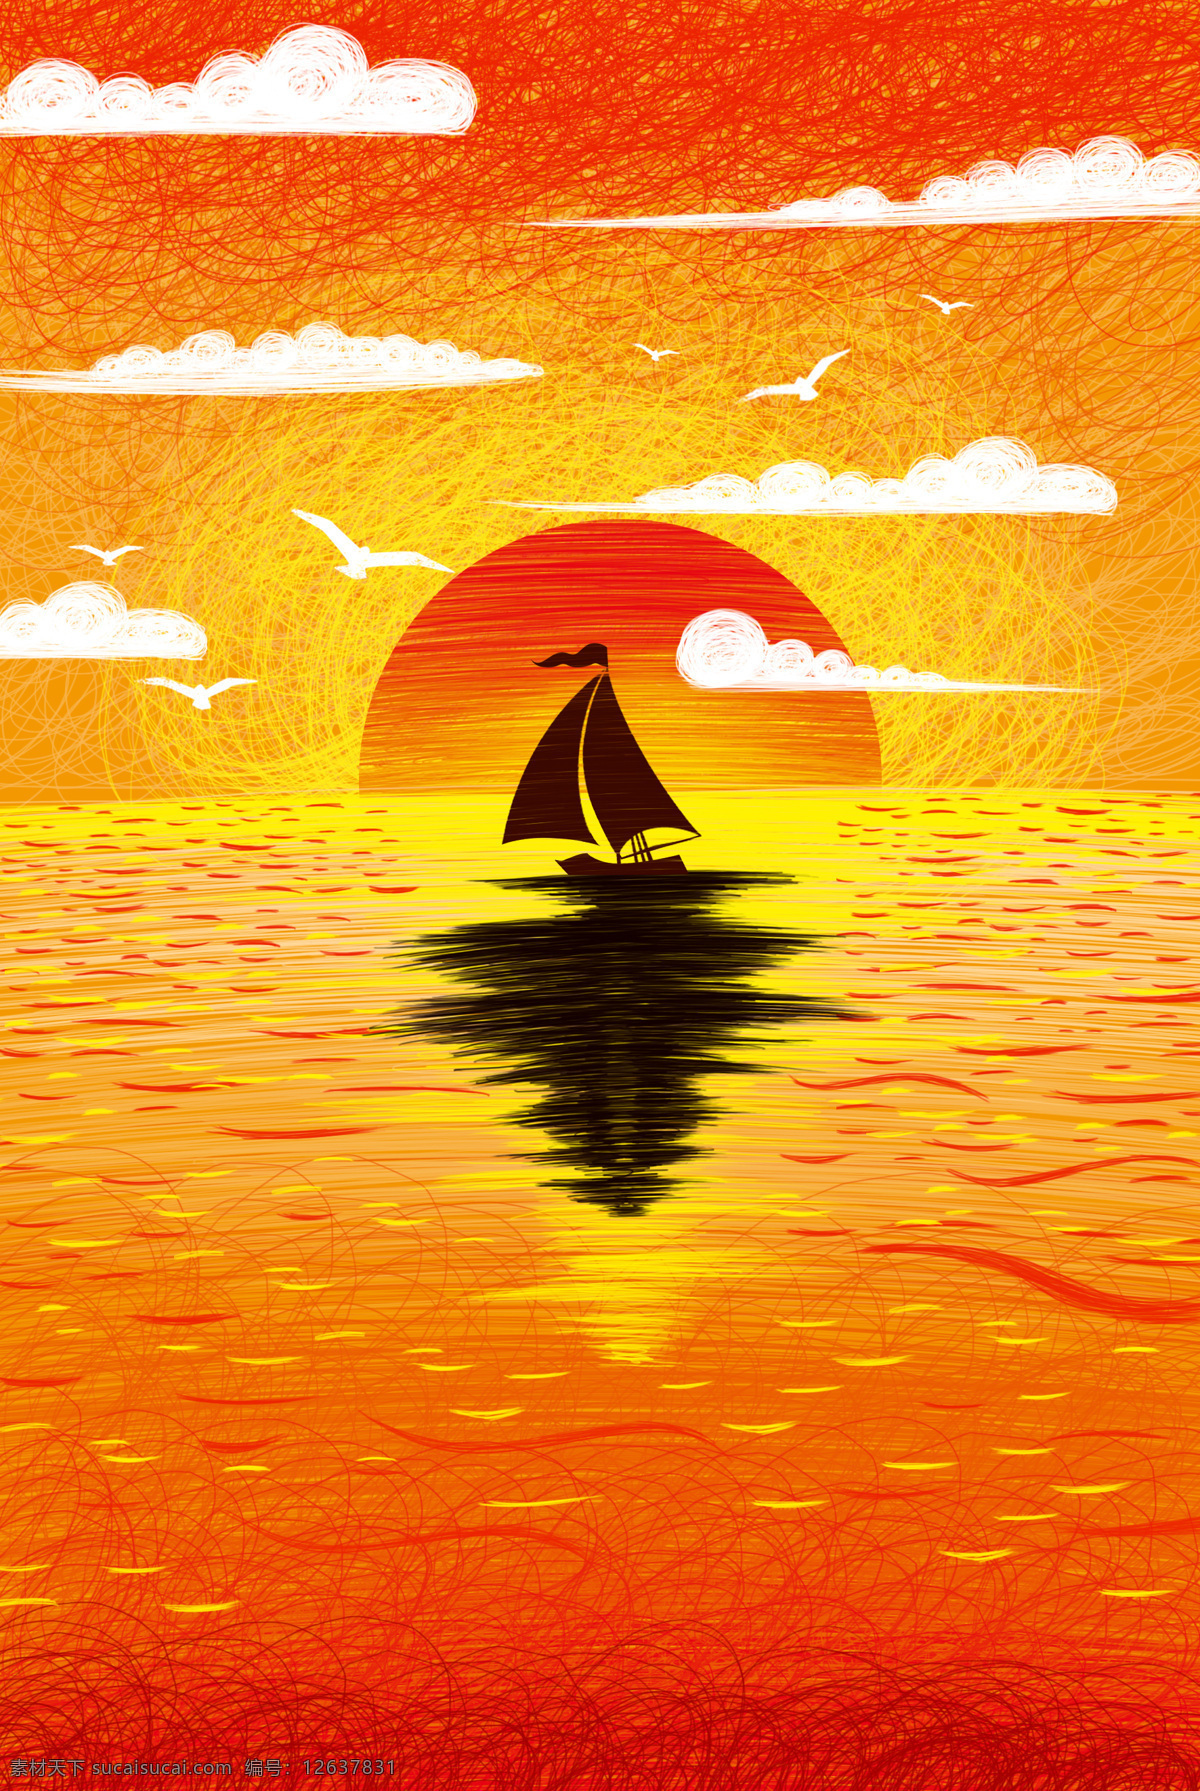 夕阳 日落 帆船 插画 卡通 背景 素材图片 清新 类